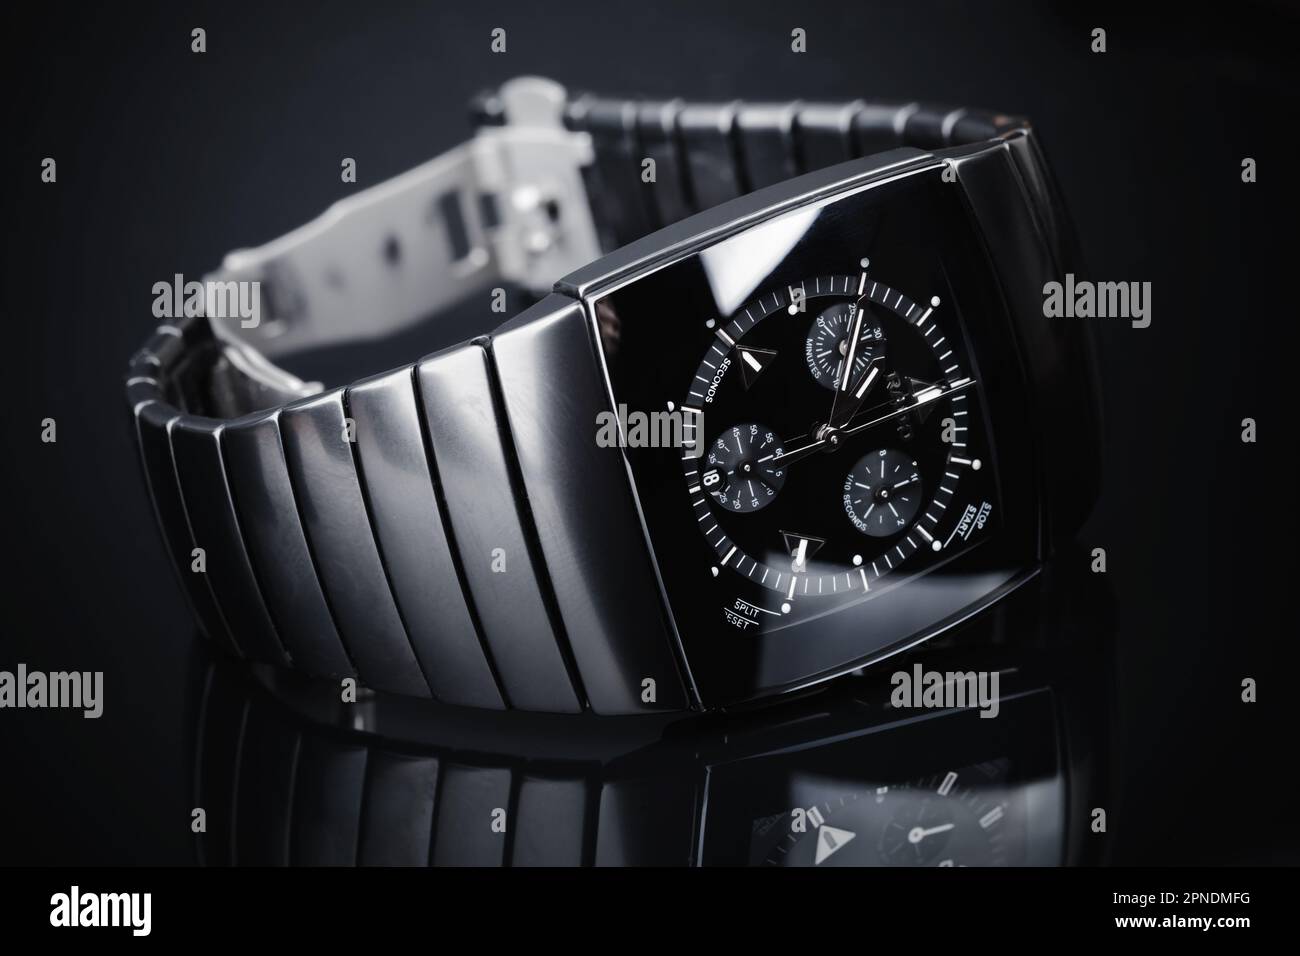 Lengnau, Suisse - 18 juin 2015: Rado Sintra Chrono, montre chronographe suisse en céramique de haute technologie avec verre saphir, studio de gros plan Banque D'Images